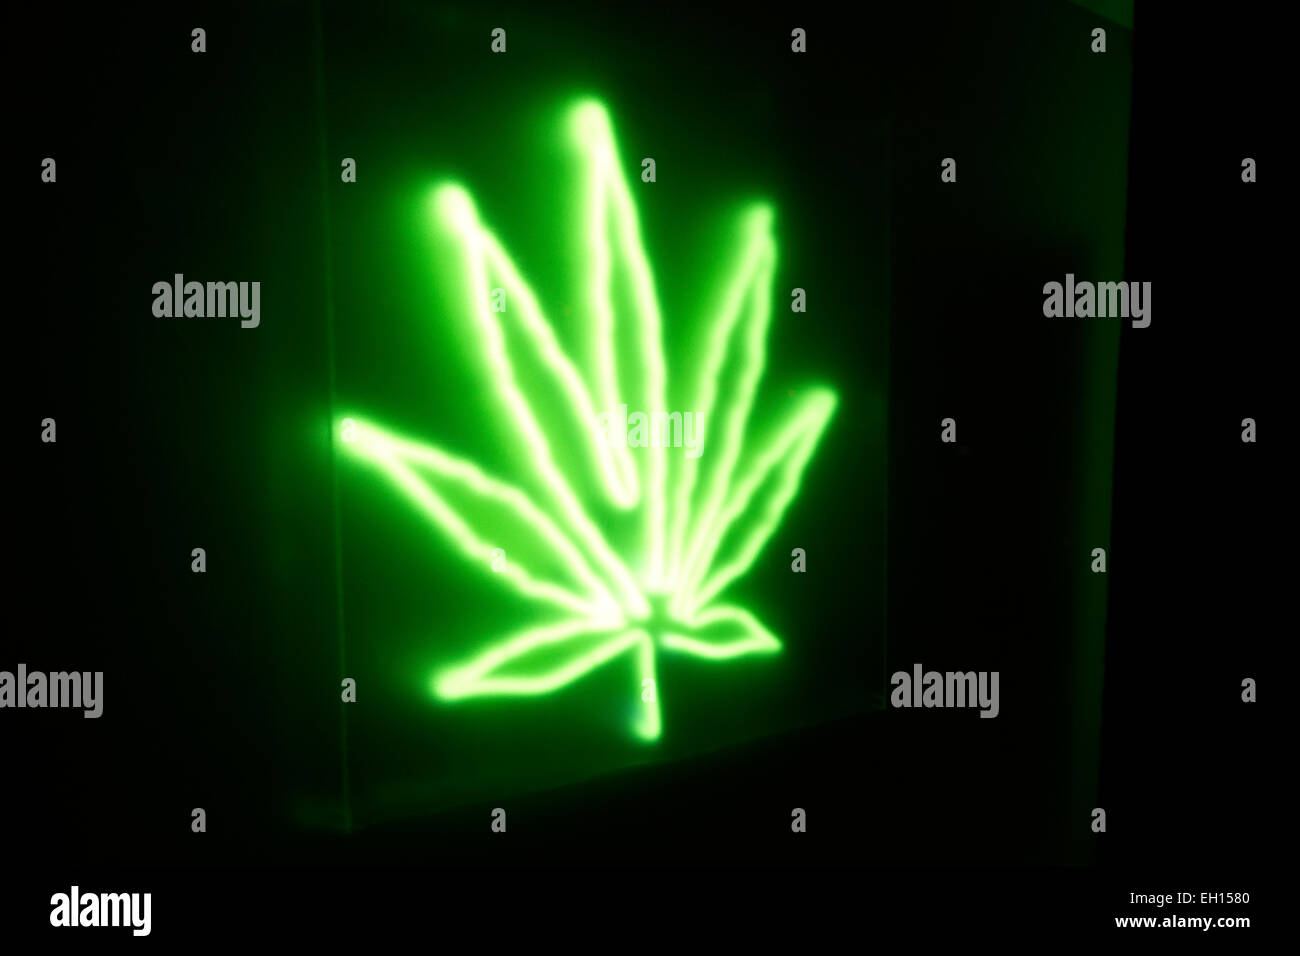 Détail de la feuille de cannabis Neon Sign sur la boutique urbaine de pharmacie de nuit. La médecine alternative, le soulagement de la douleur chronique. Banque D'Images